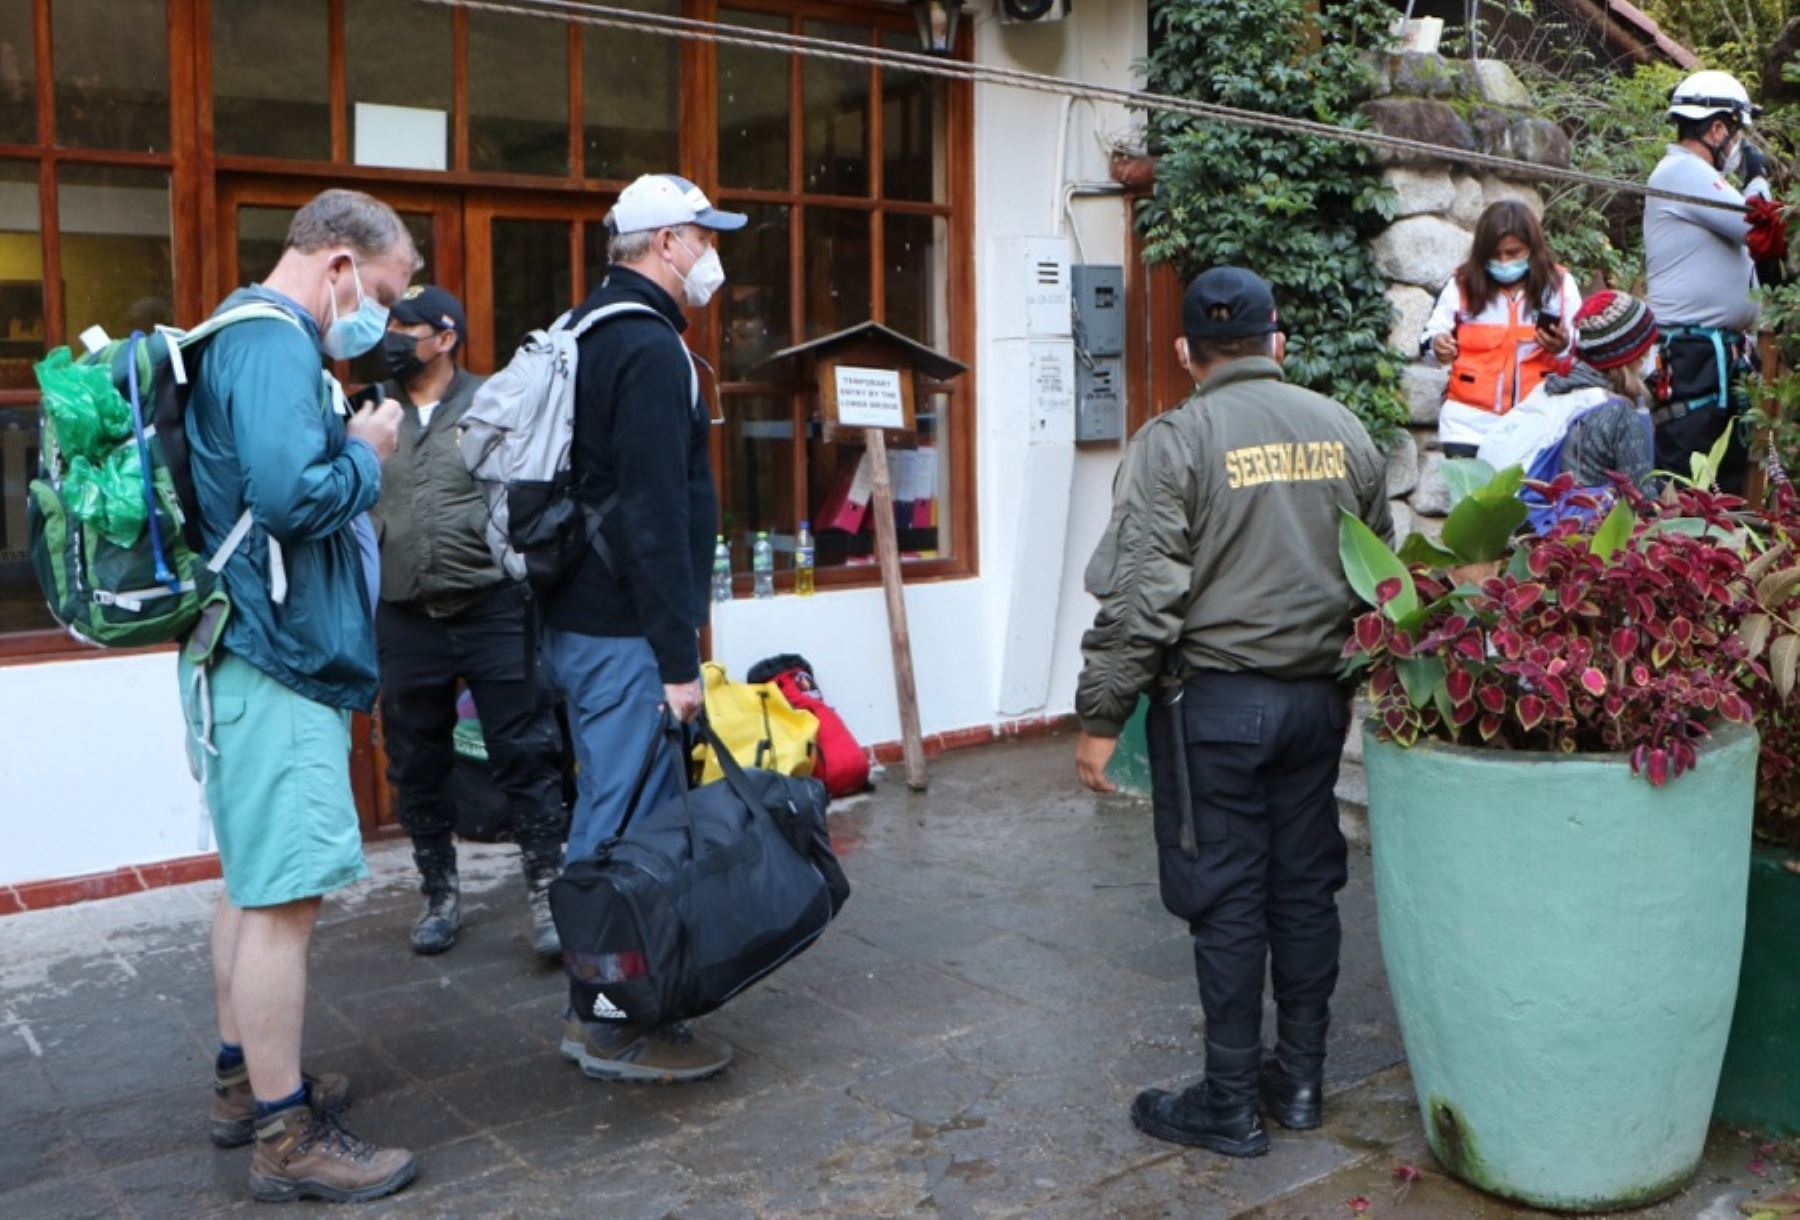 Mincetur coordina medidas para salvaguardar la integridad de los turistas que visiten Machu Picchu ante el anunciado paro convocado por comunidades de ese distrito. ANDINA/Difusión